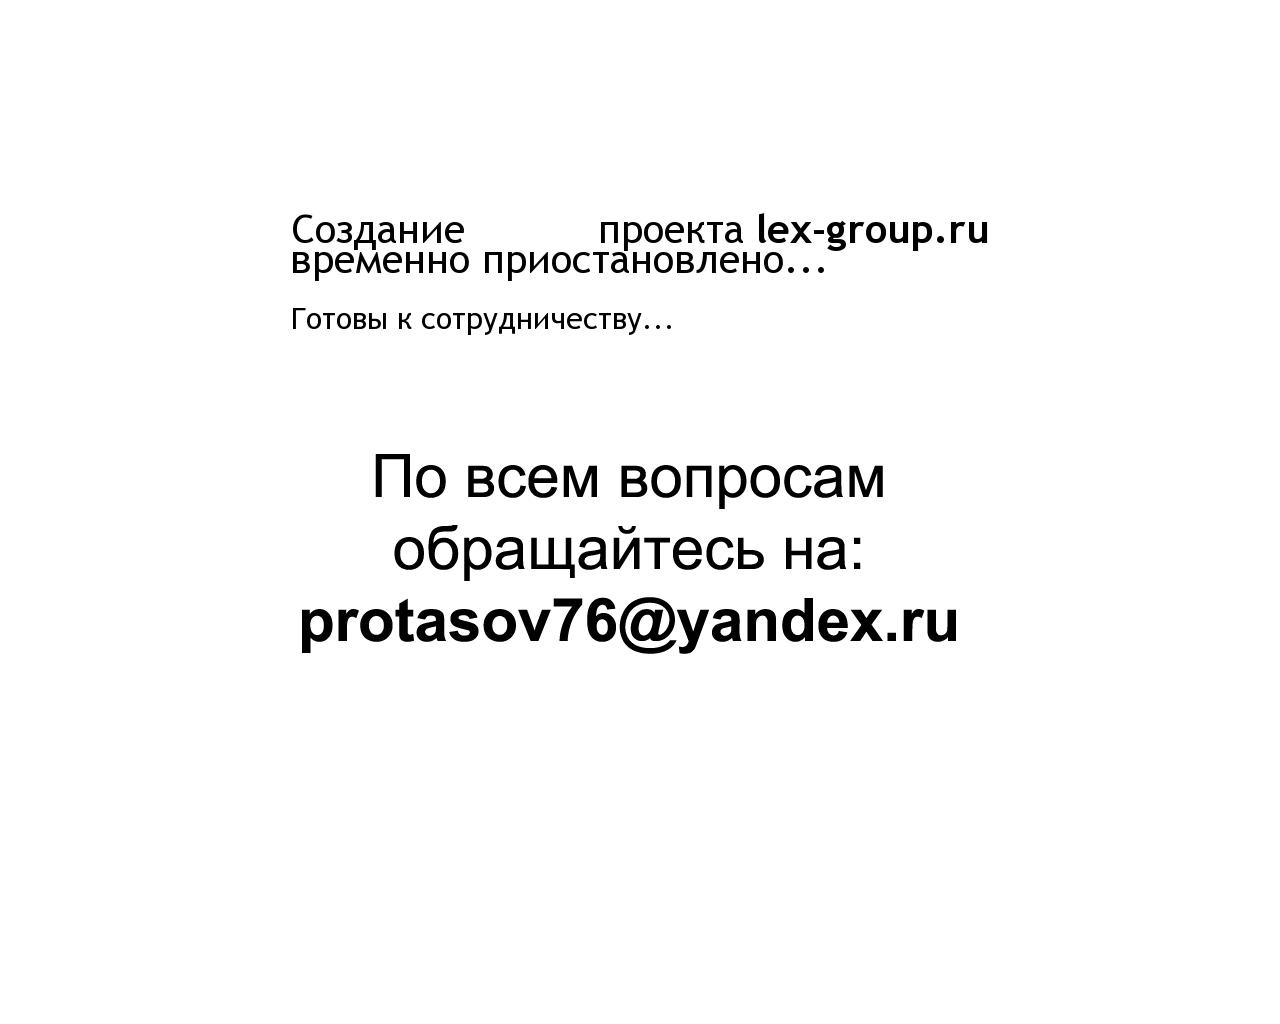 Изображение сайта lex-group.ru в разрешении 1280x1024